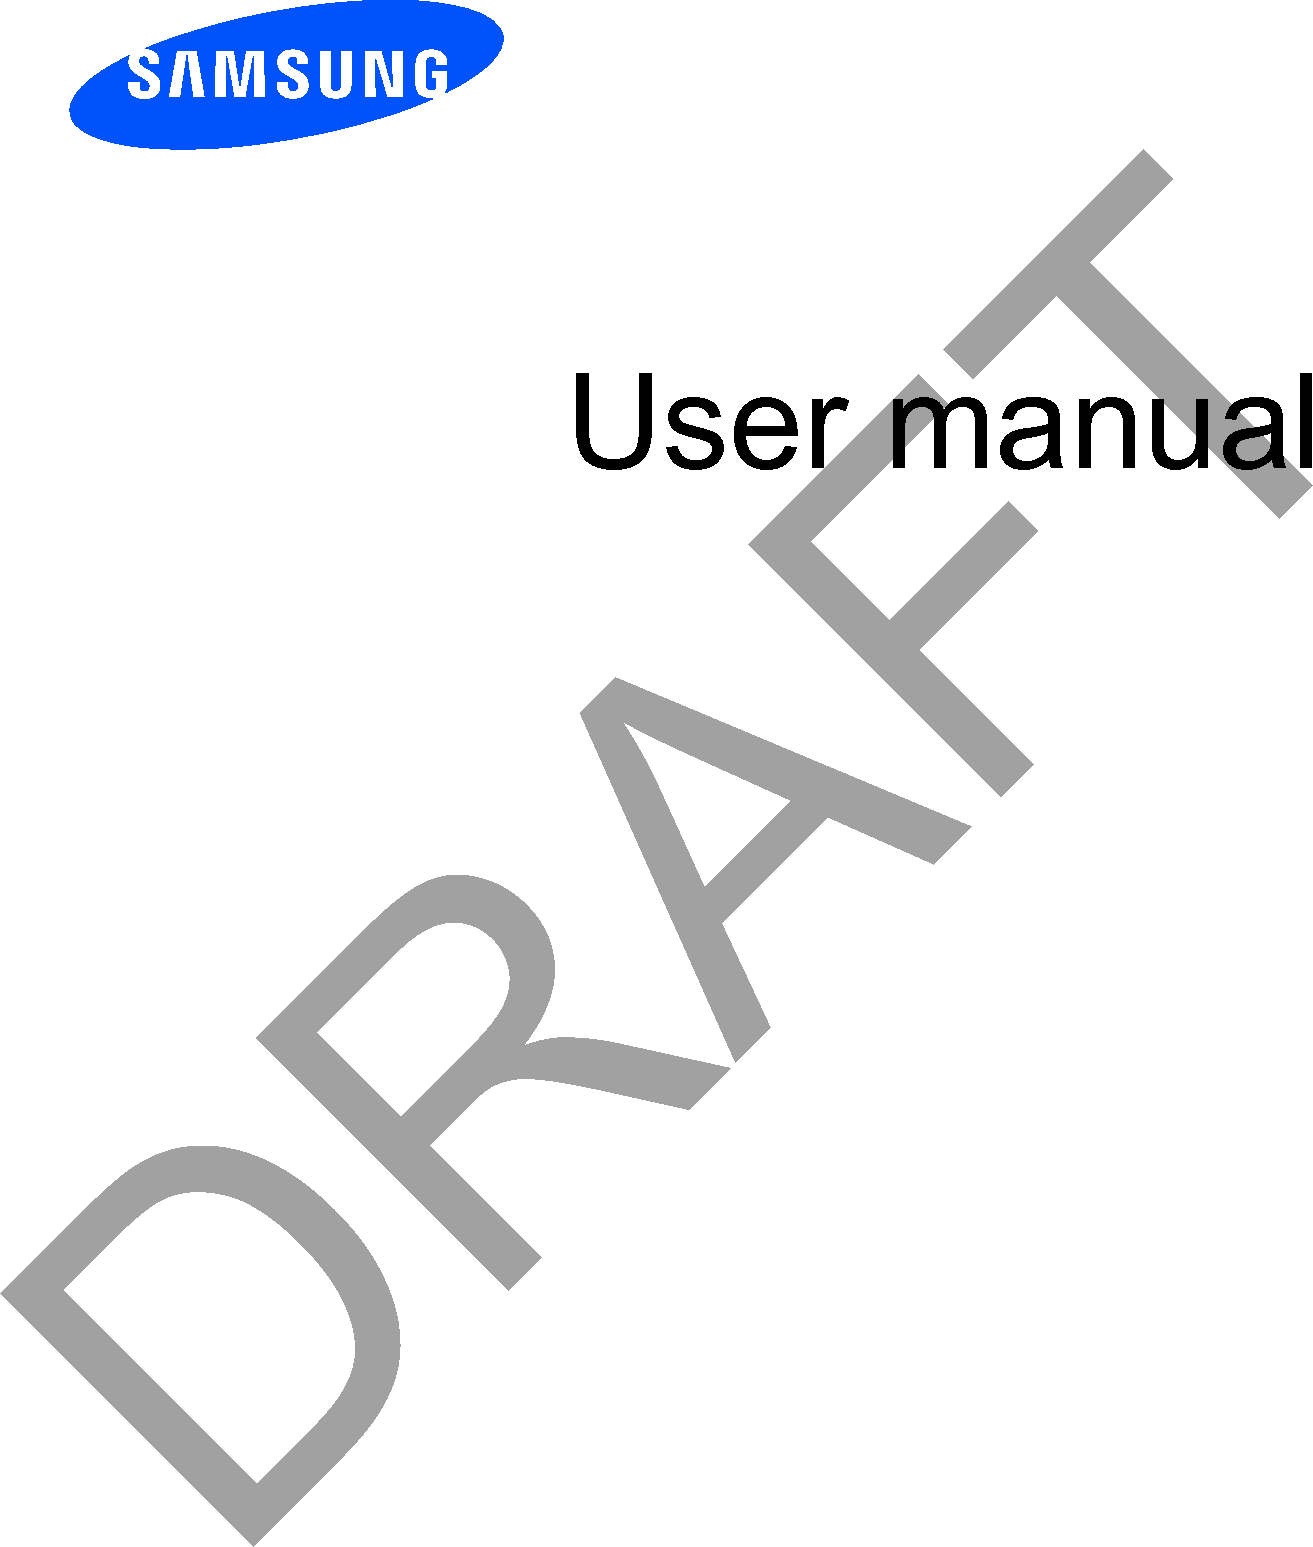 User manualDRAFT